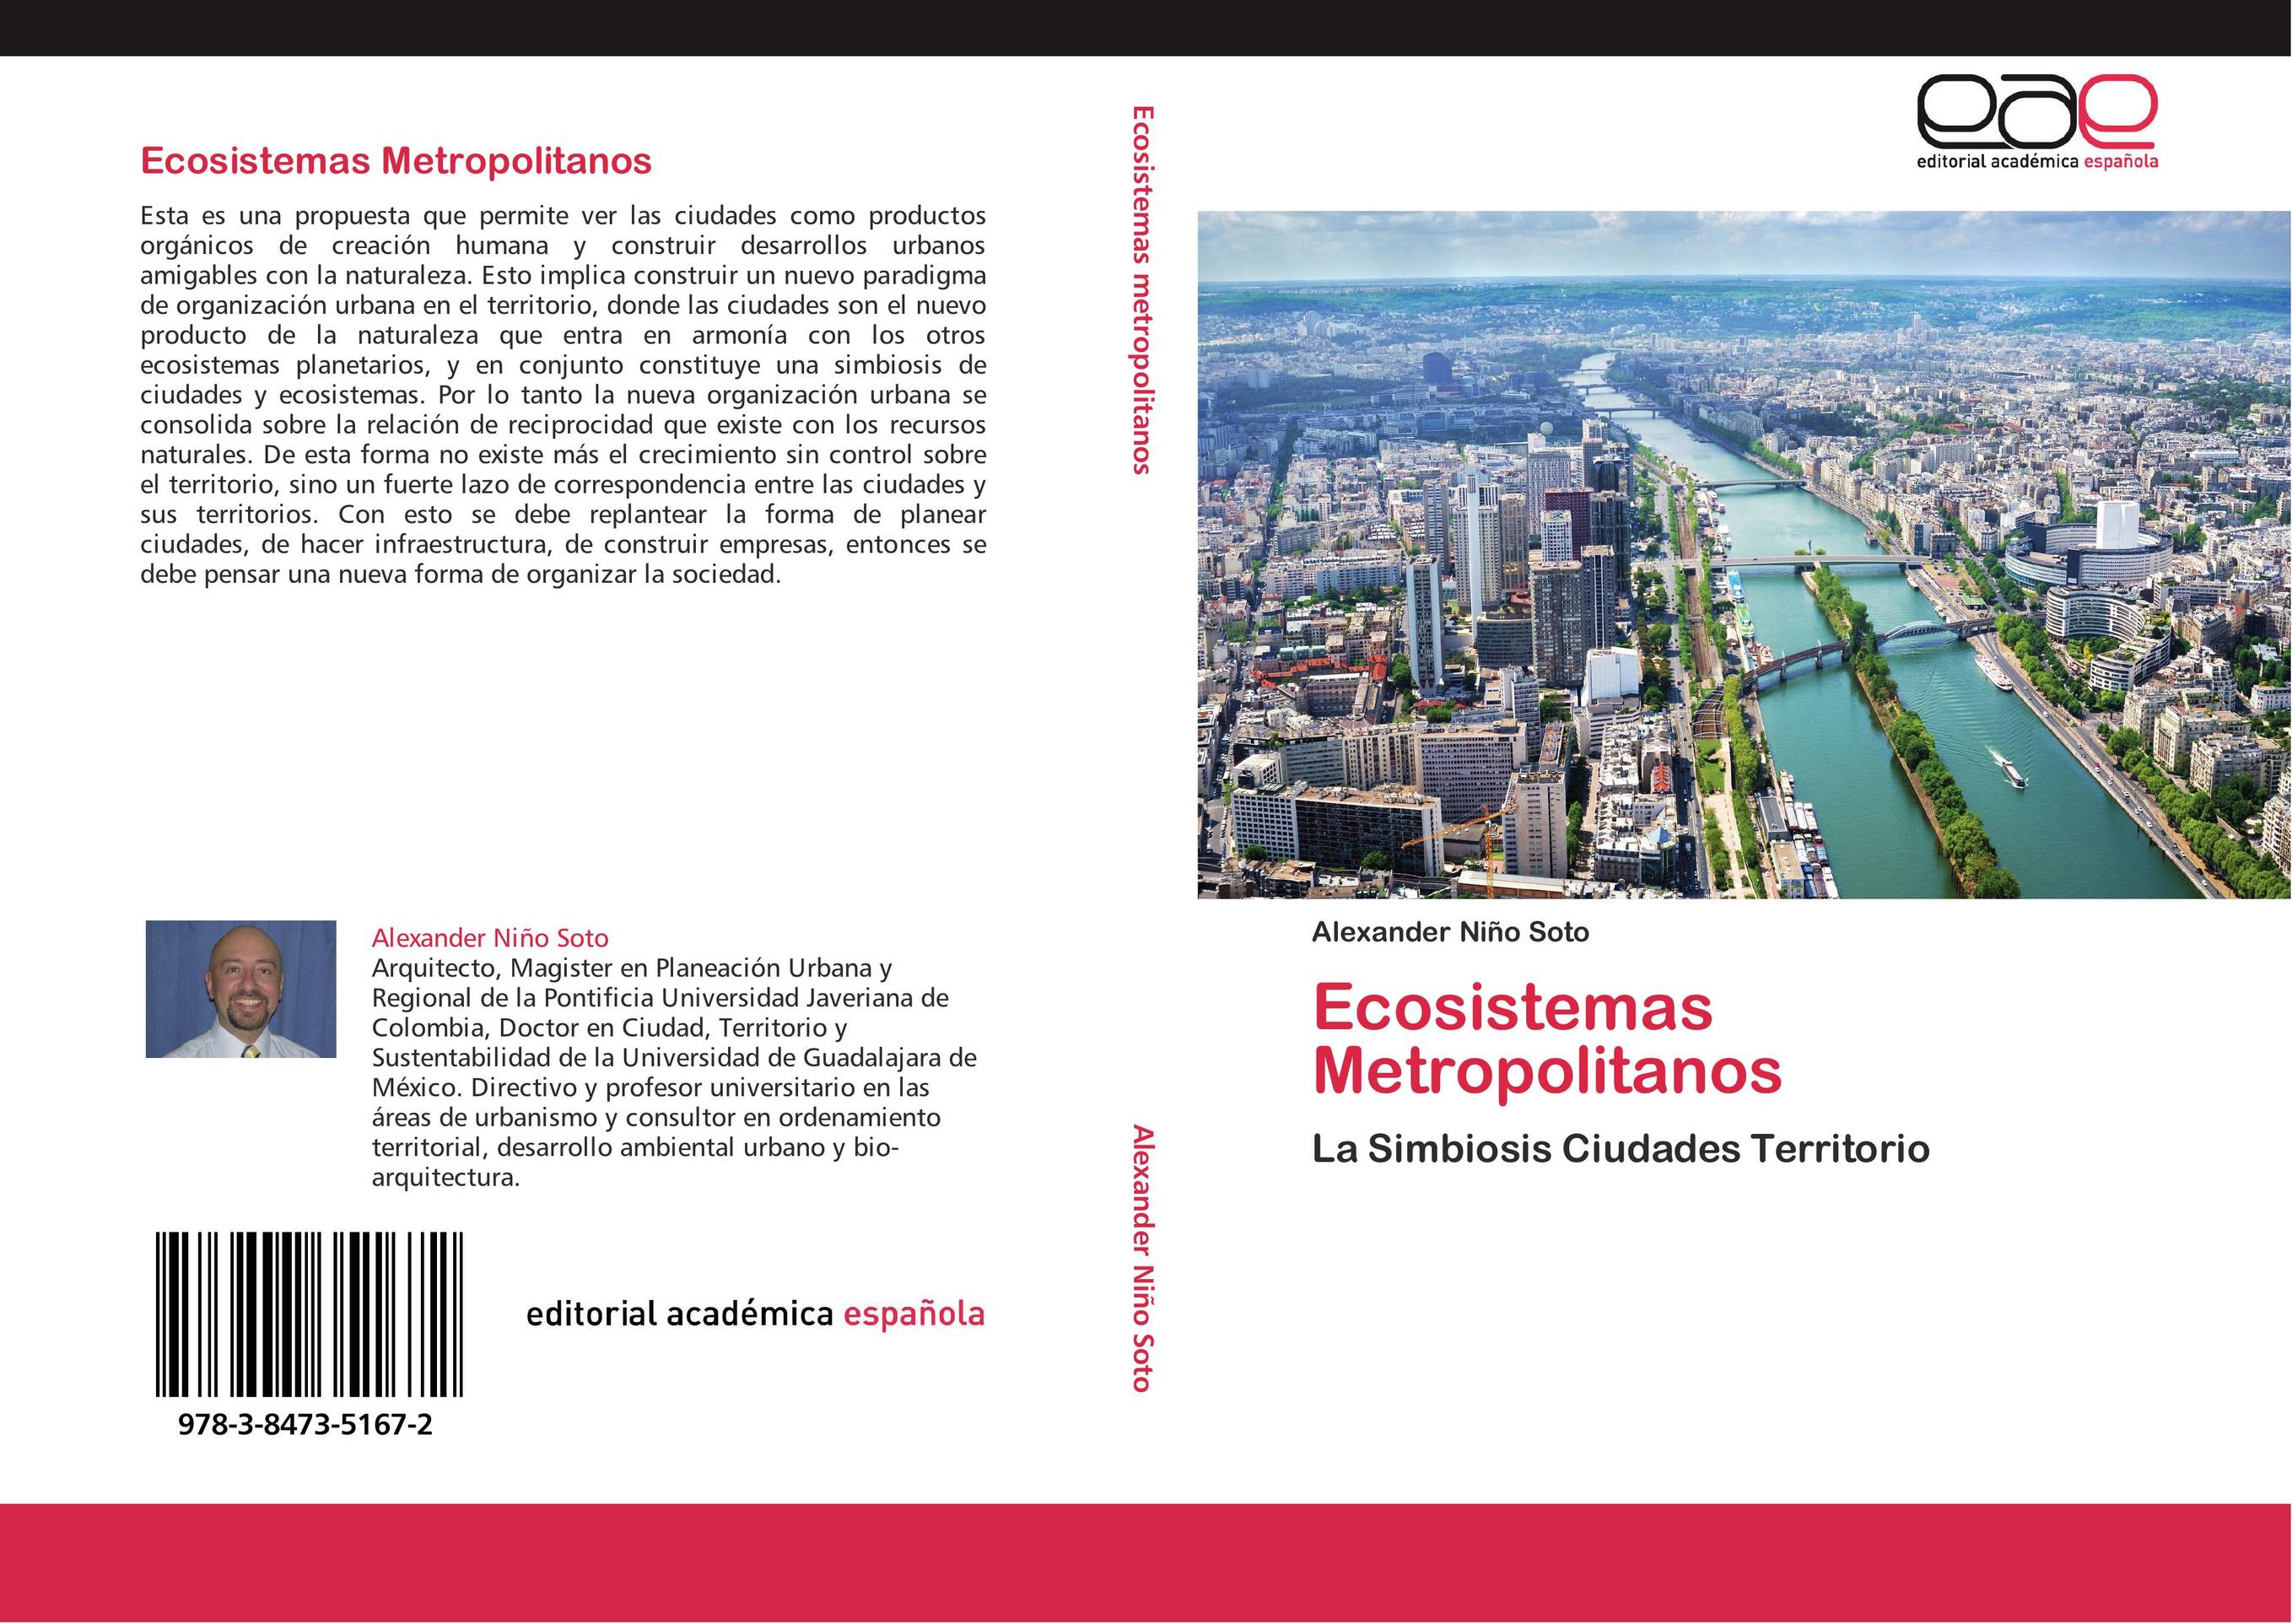 Ecosistemas Metropolitanos